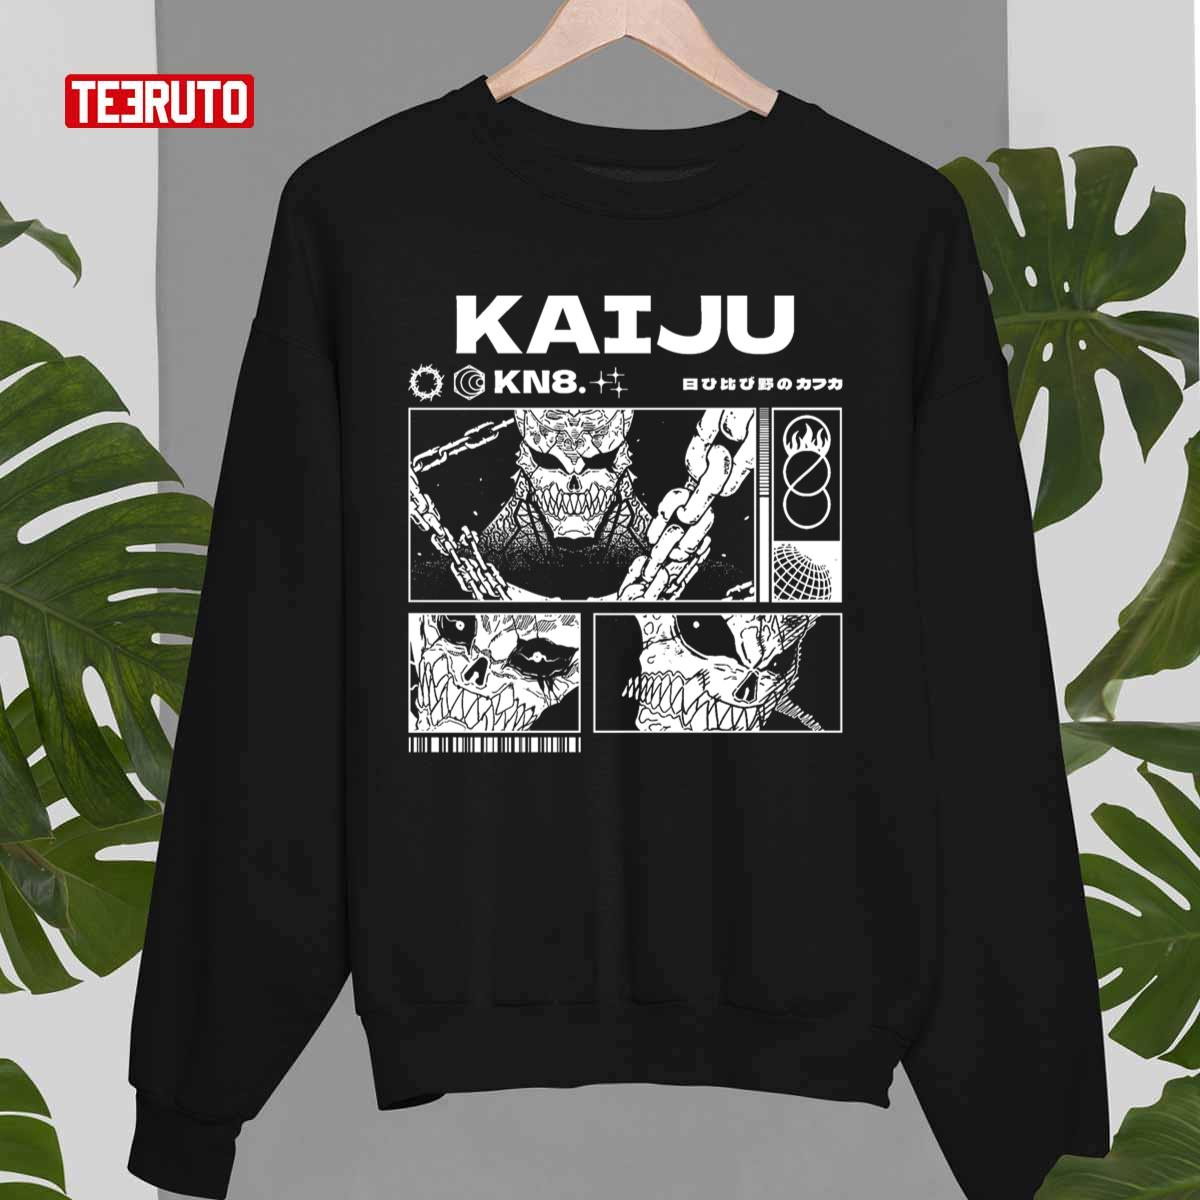 Kn8 Kaiju Kaiju No 8 Unisex T-Shirt